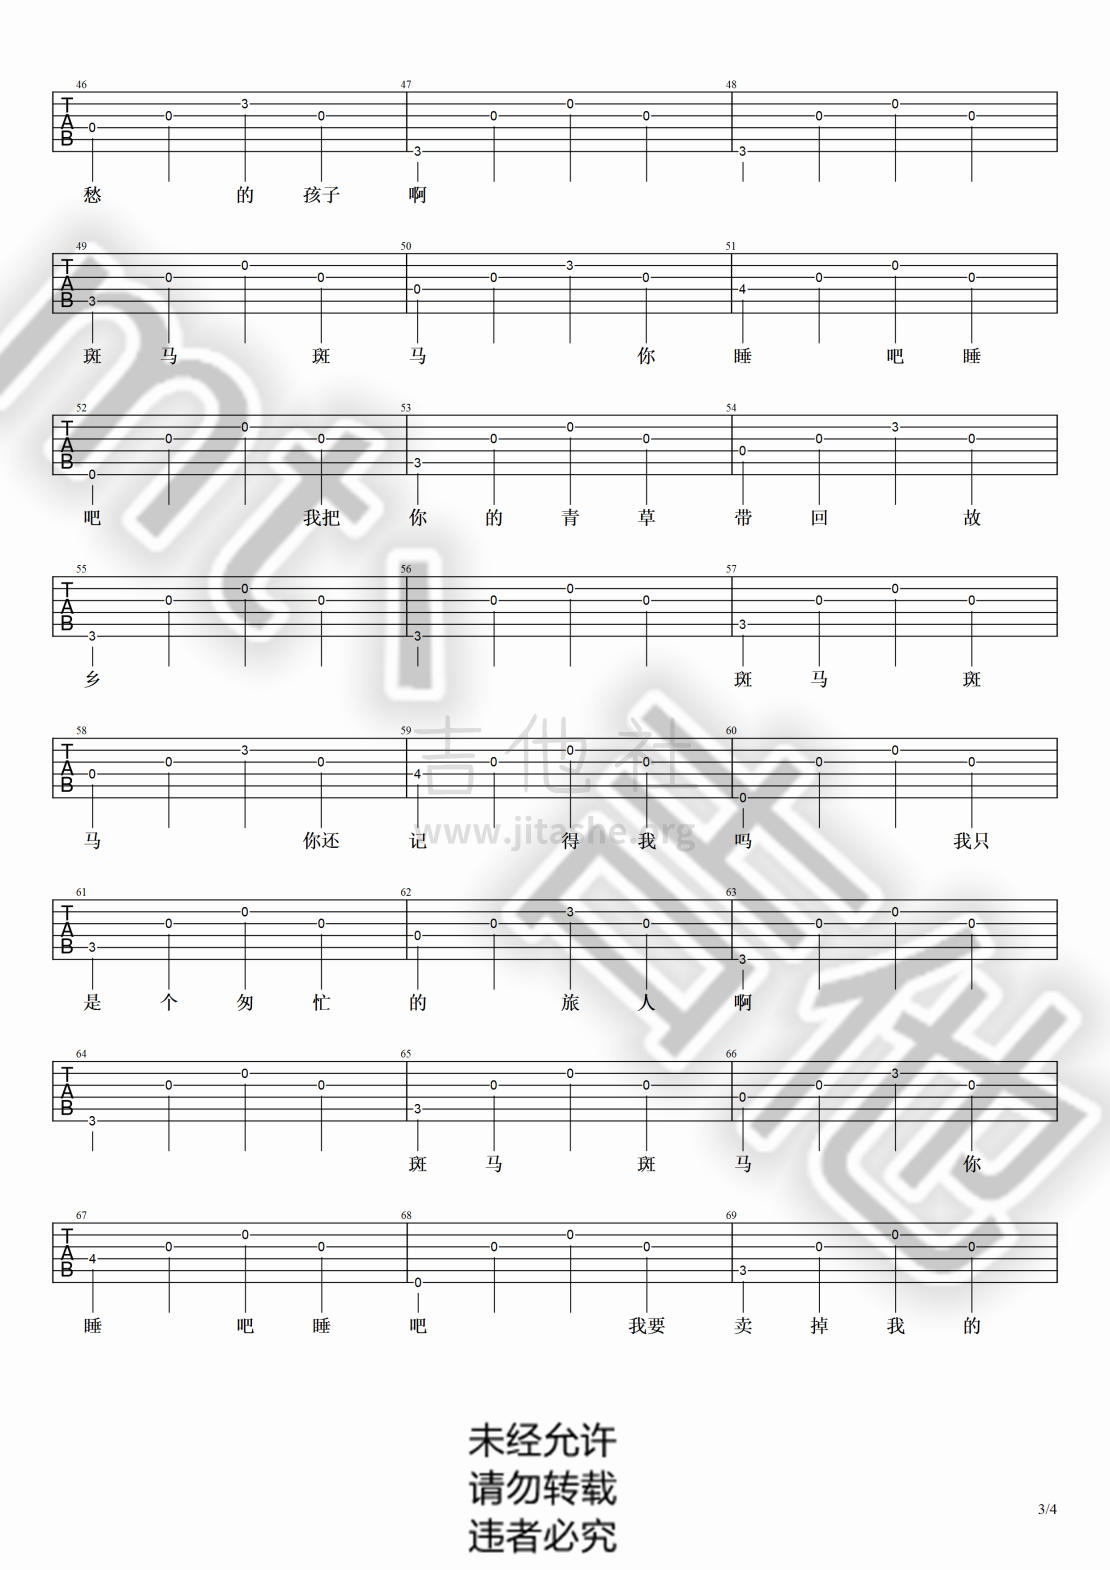 打印:斑马斑马（超级超级简单简单版！！！！）吉他谱_宋冬野_斑马斑马#3.png